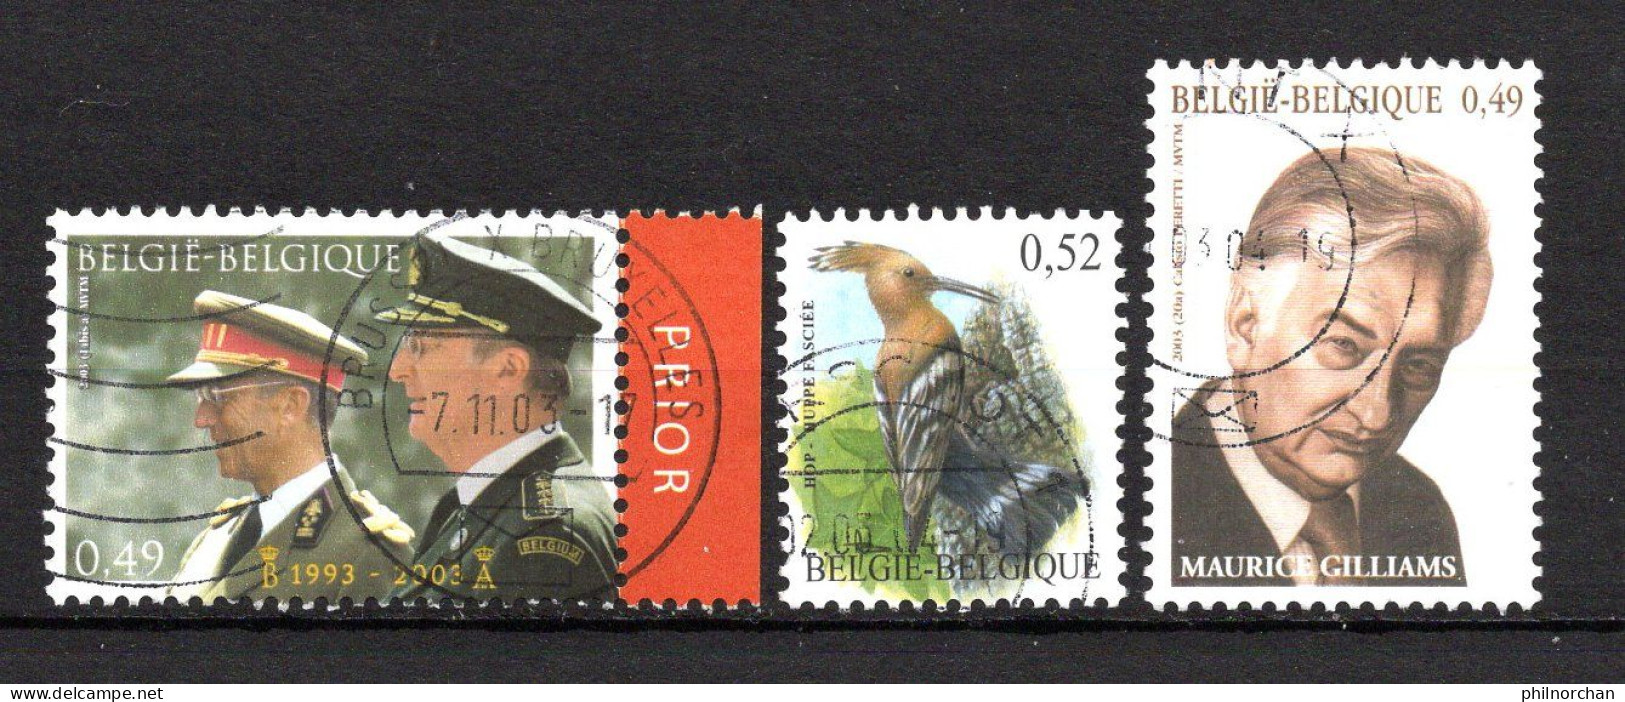 Belgique 2000 à 2003  78 Timbres Différents  3,70 €    (cote 47,55 €  78 Valeurs) - Used Stamps